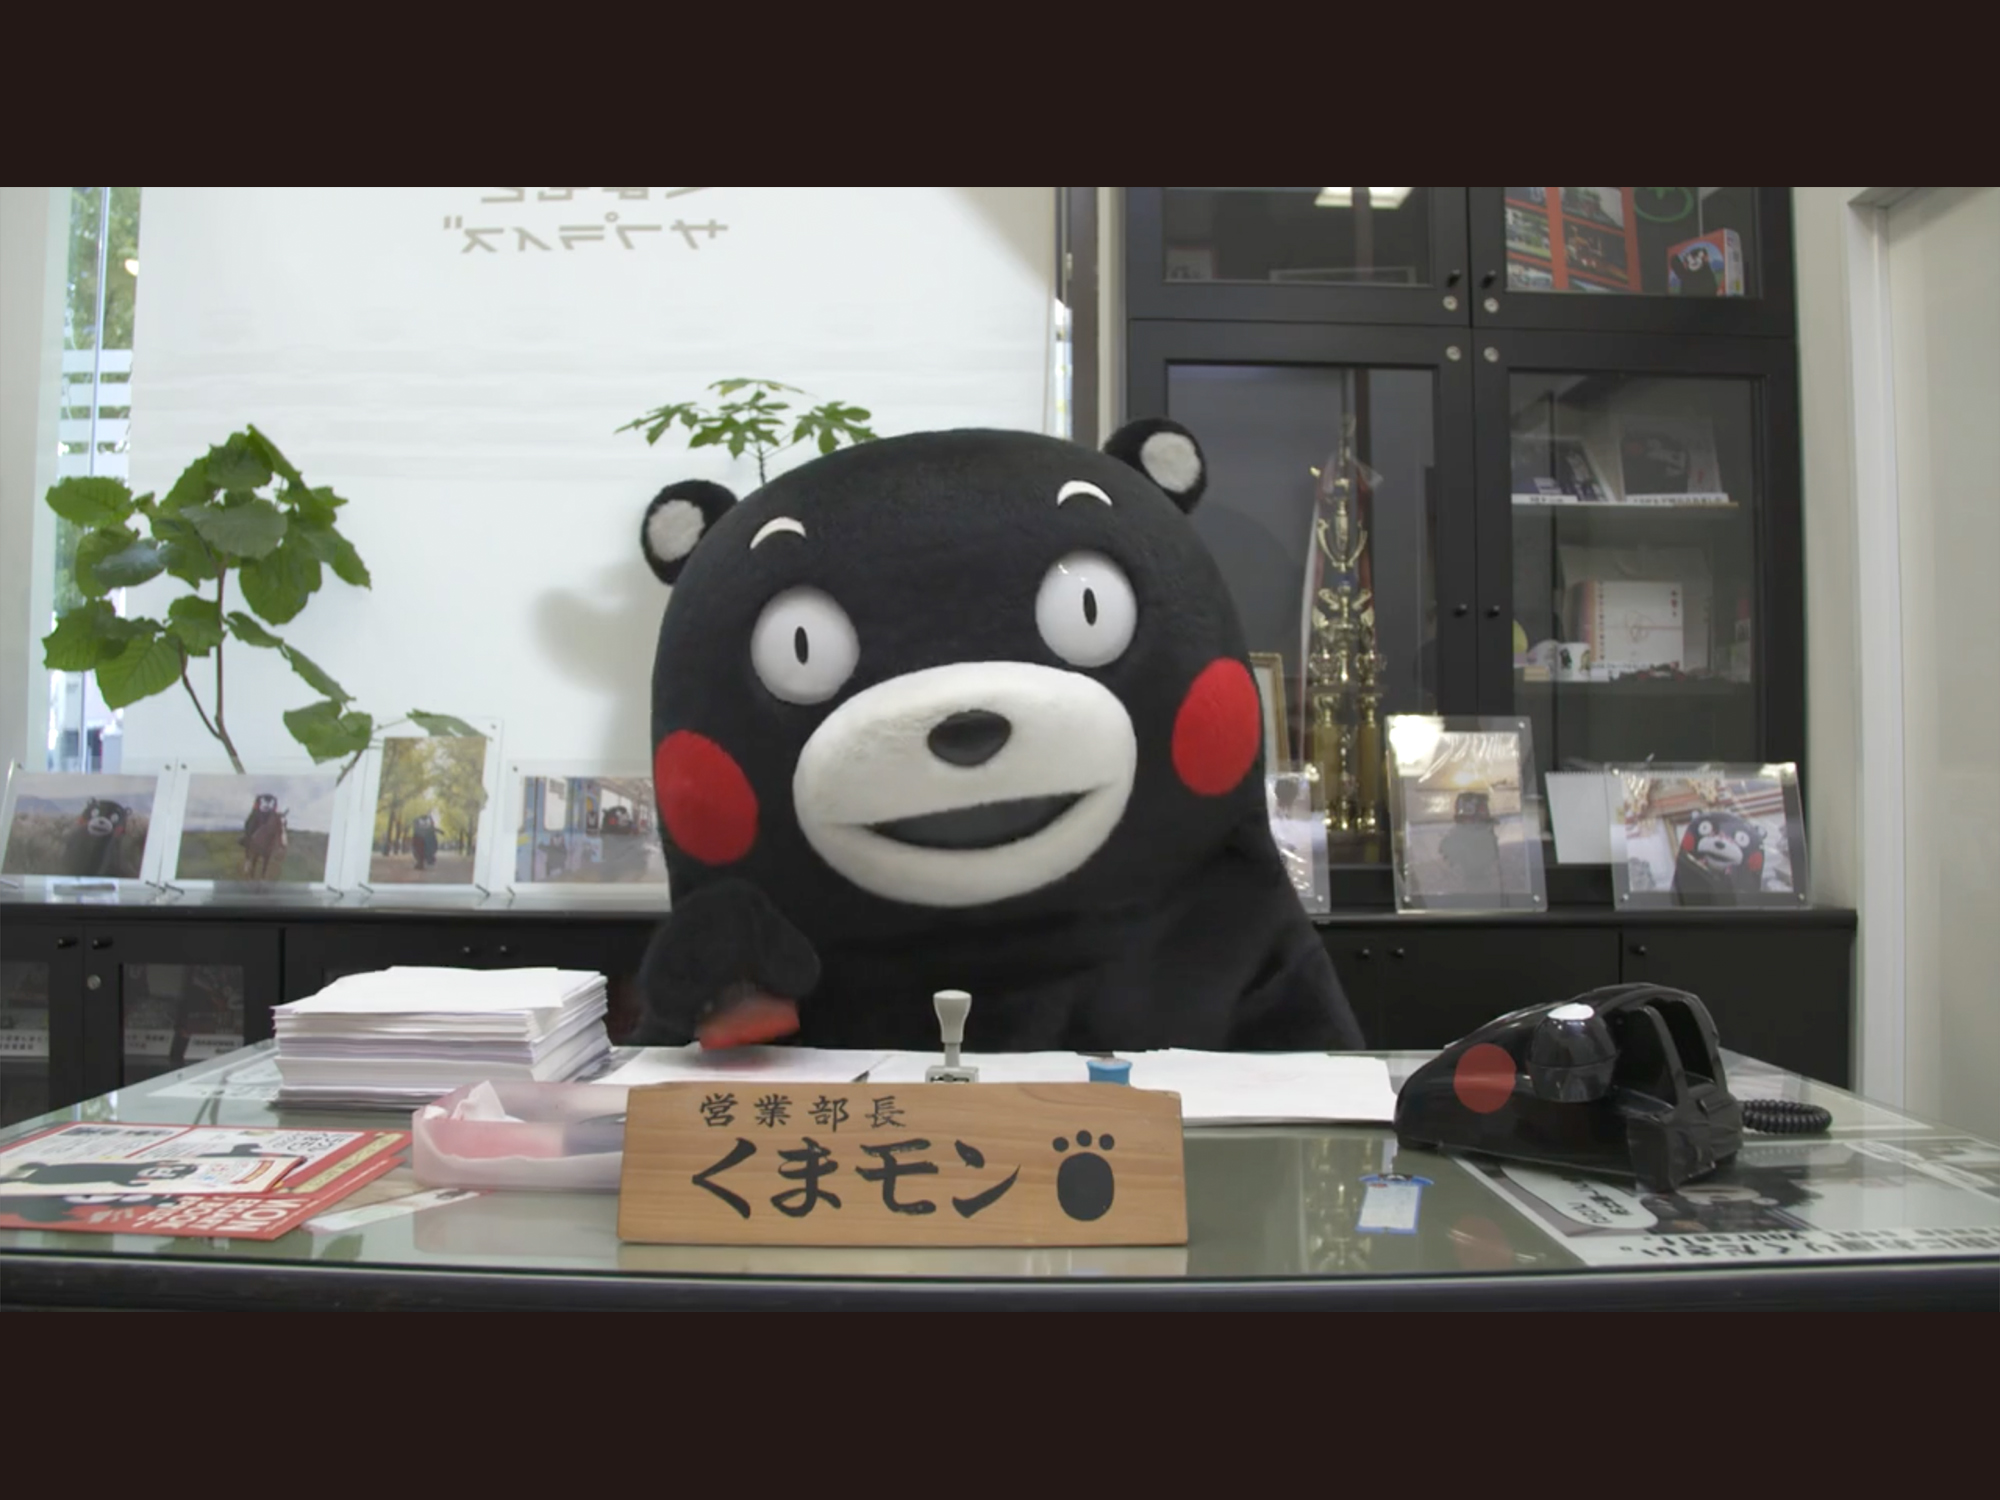 くまモンが新感覚のインタラクティブ動画で登場 ドッチへ進む くまモンthe Movie 公開 熊本県知事公室くまモングループのプレスリリース